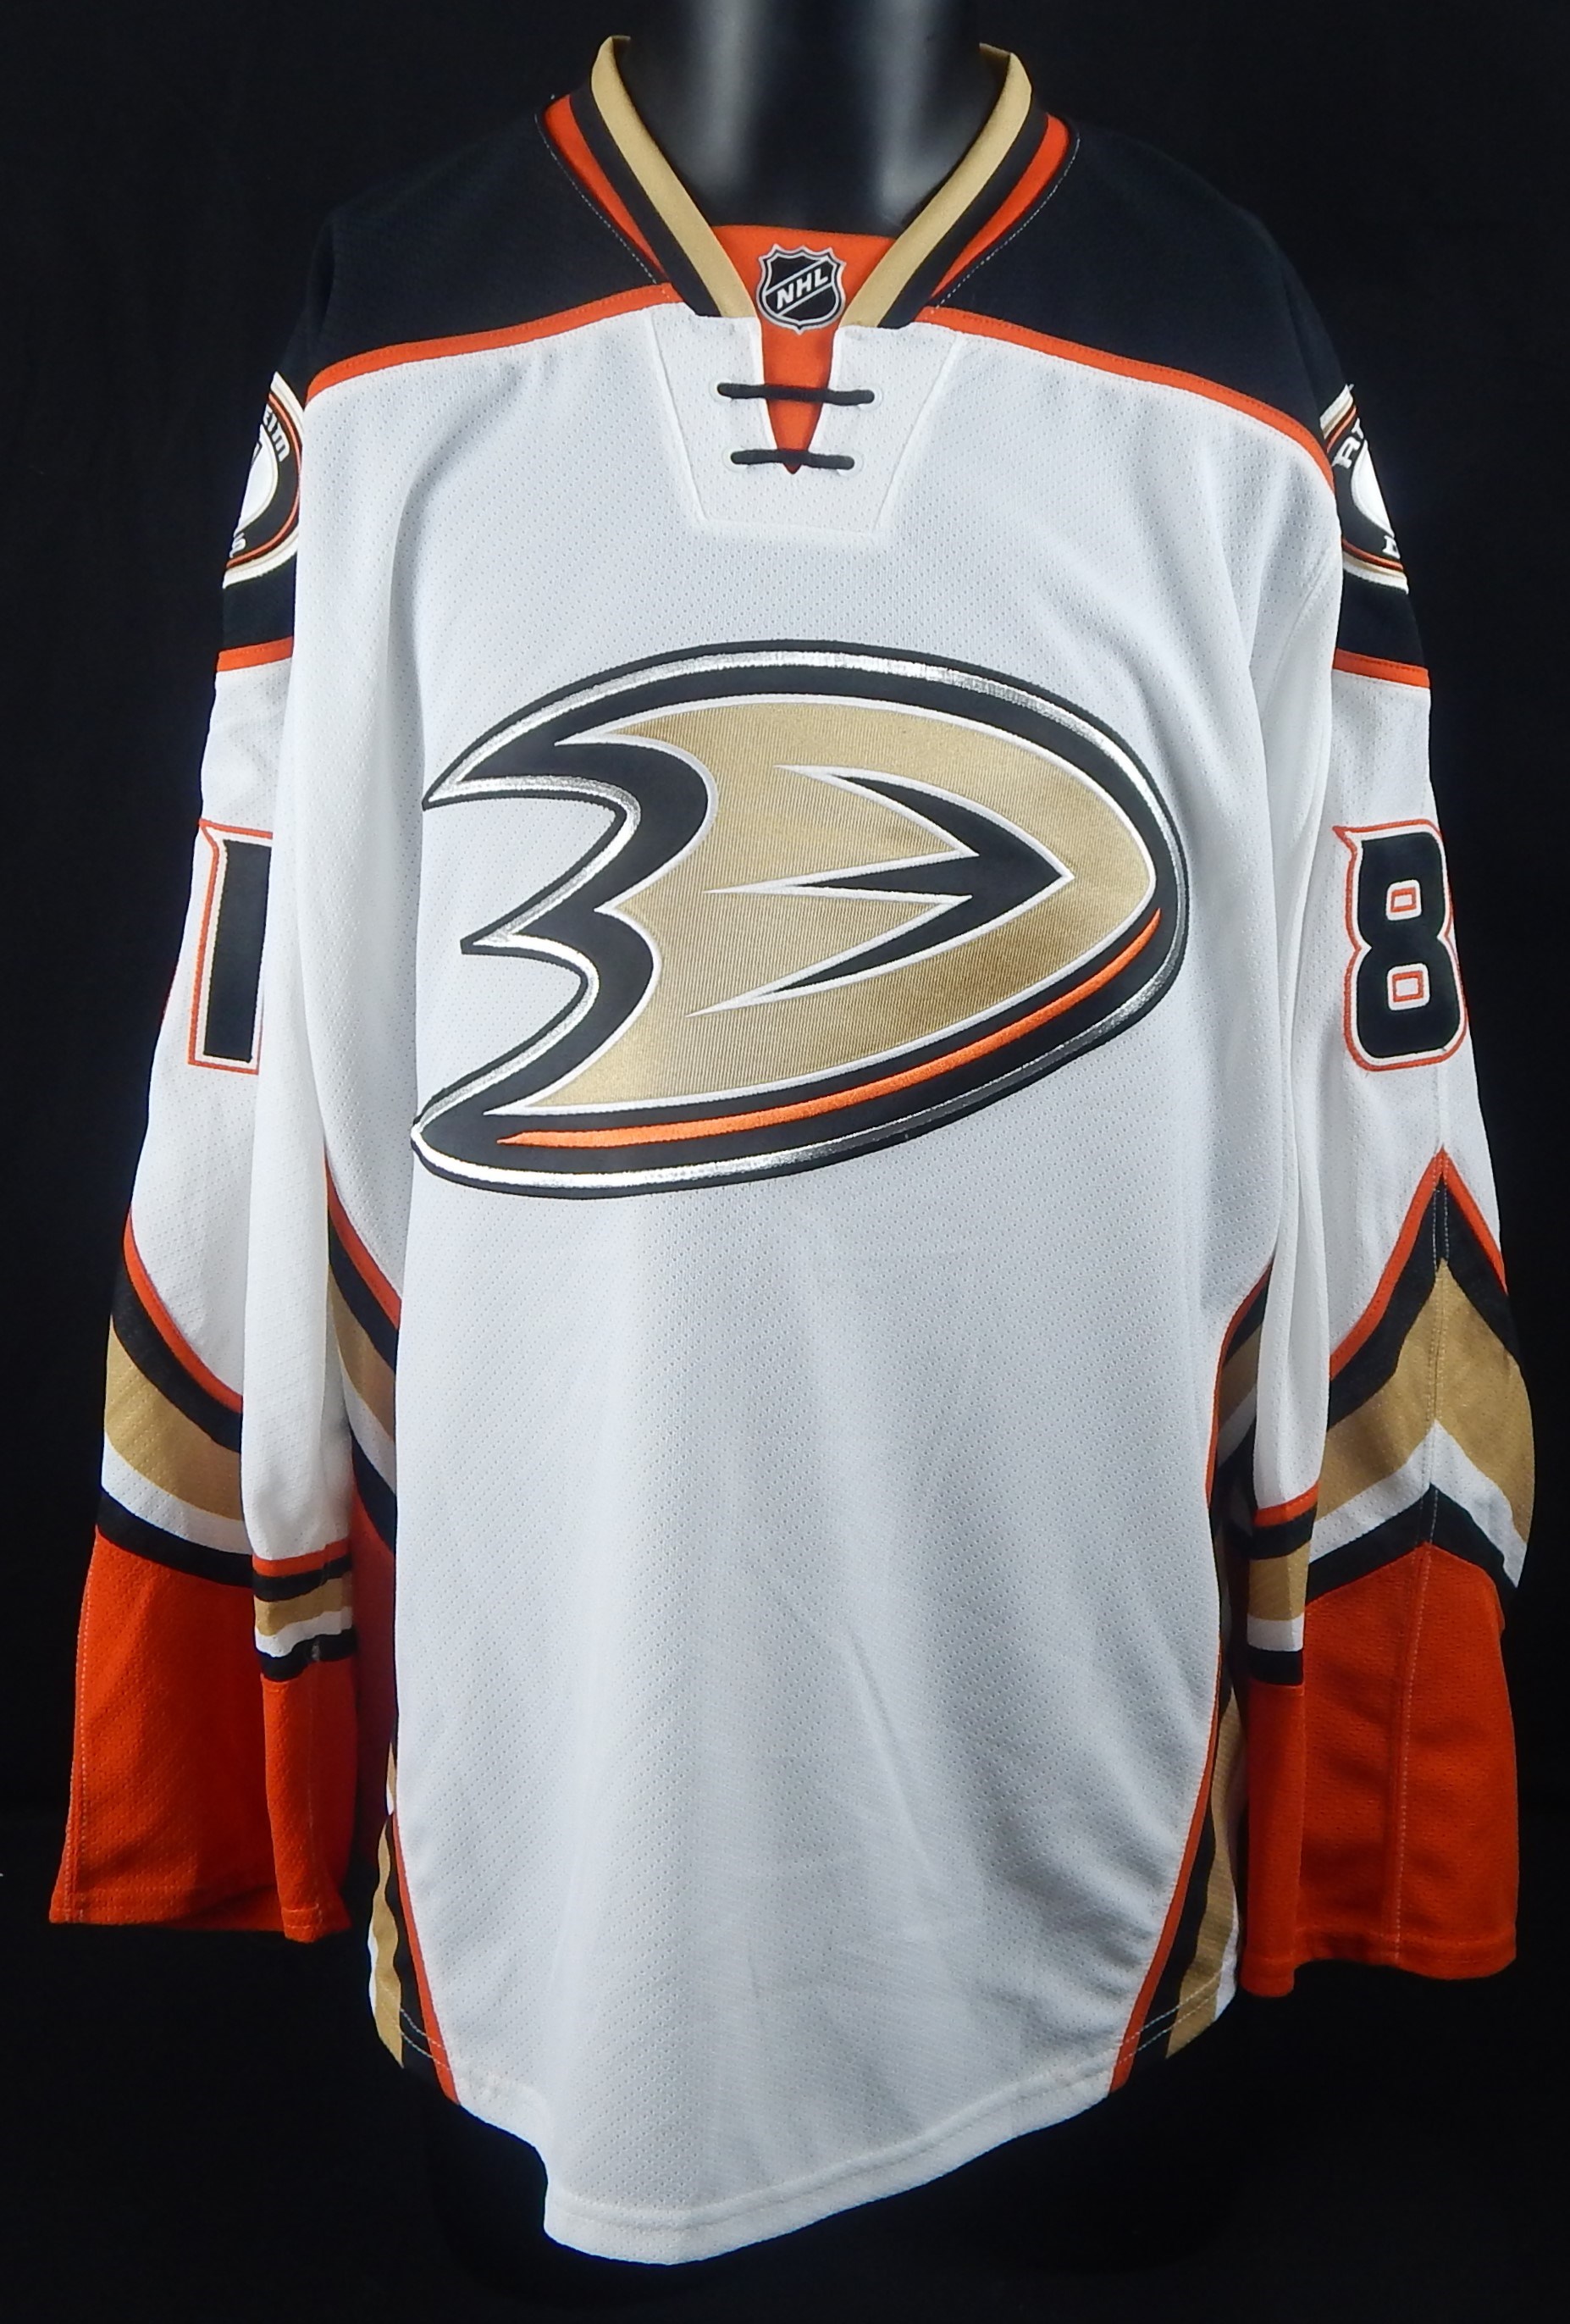 2015-16 Anaheim Ducks' Matthew Berkovitz Game Worn Jersey